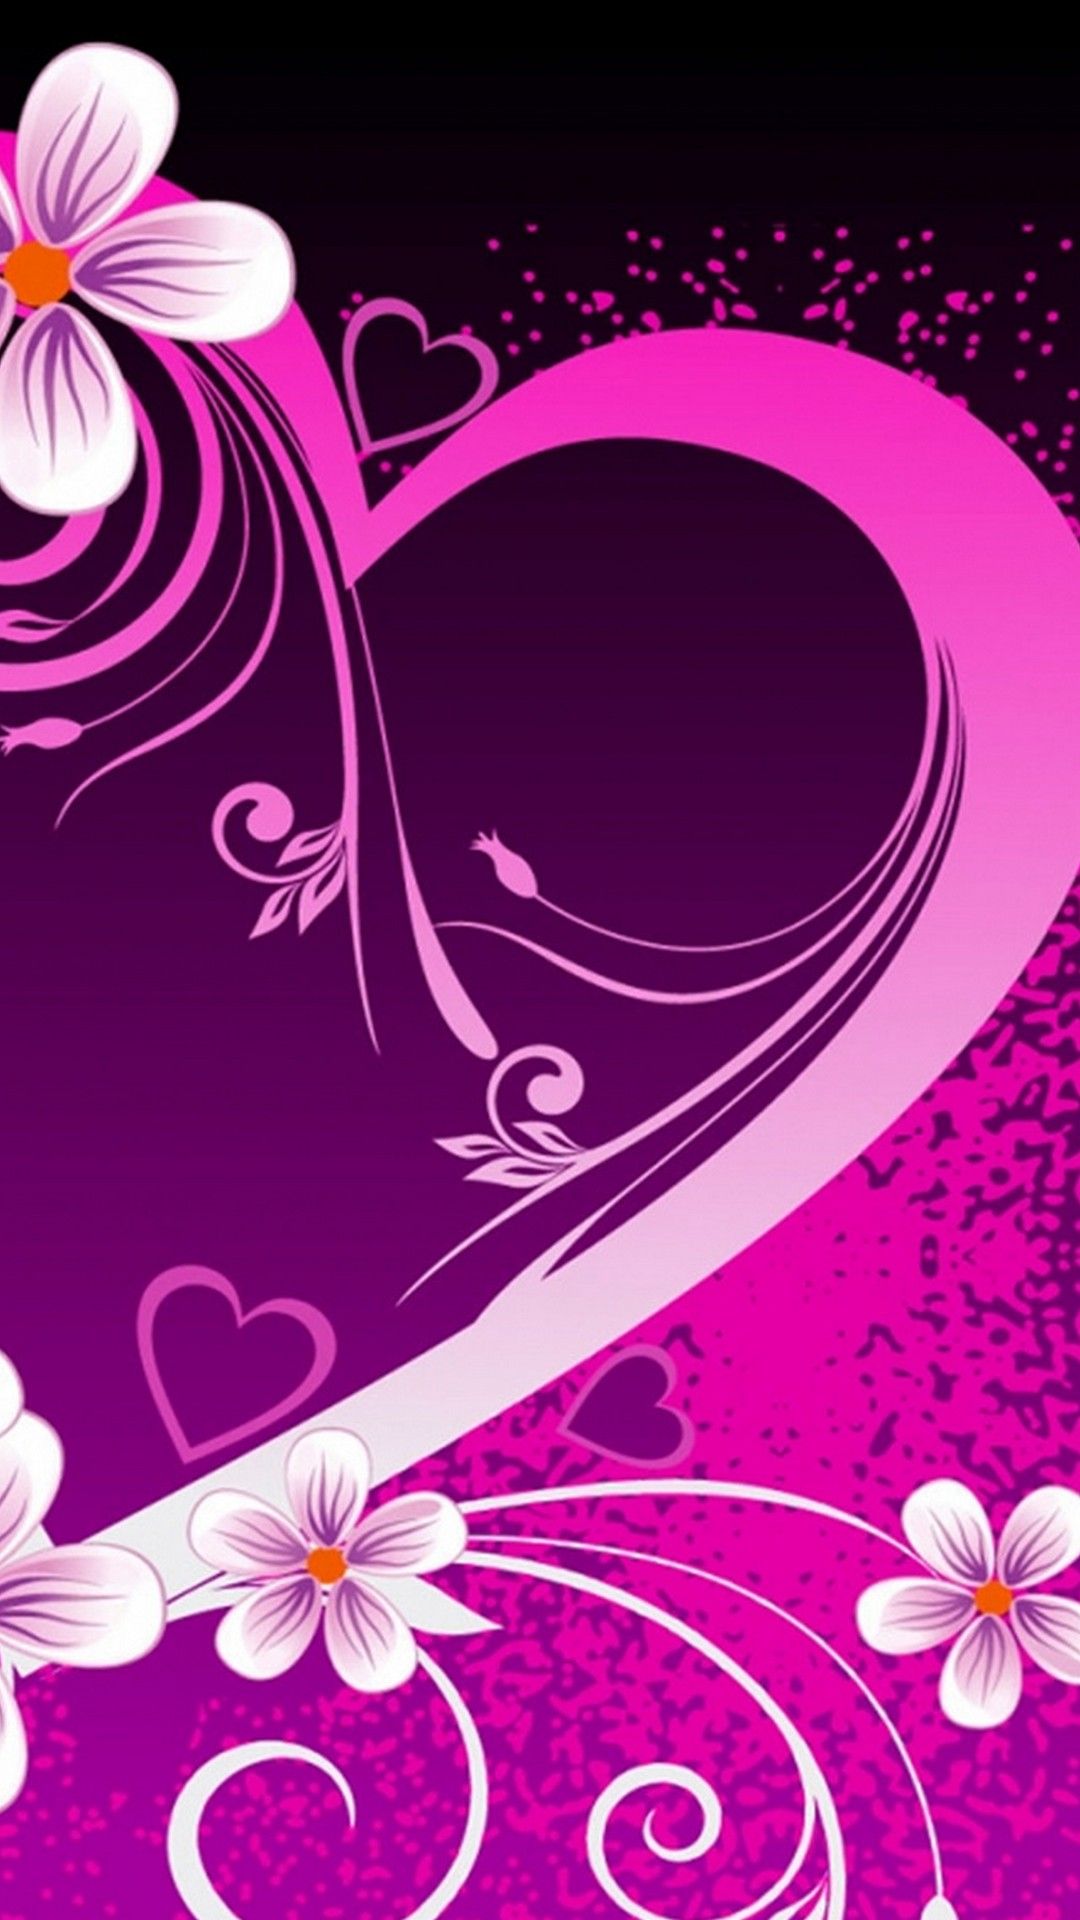 ガーリー壁紙,紫の,バイオレット,ピンク,パターン,グラフィックデザイン